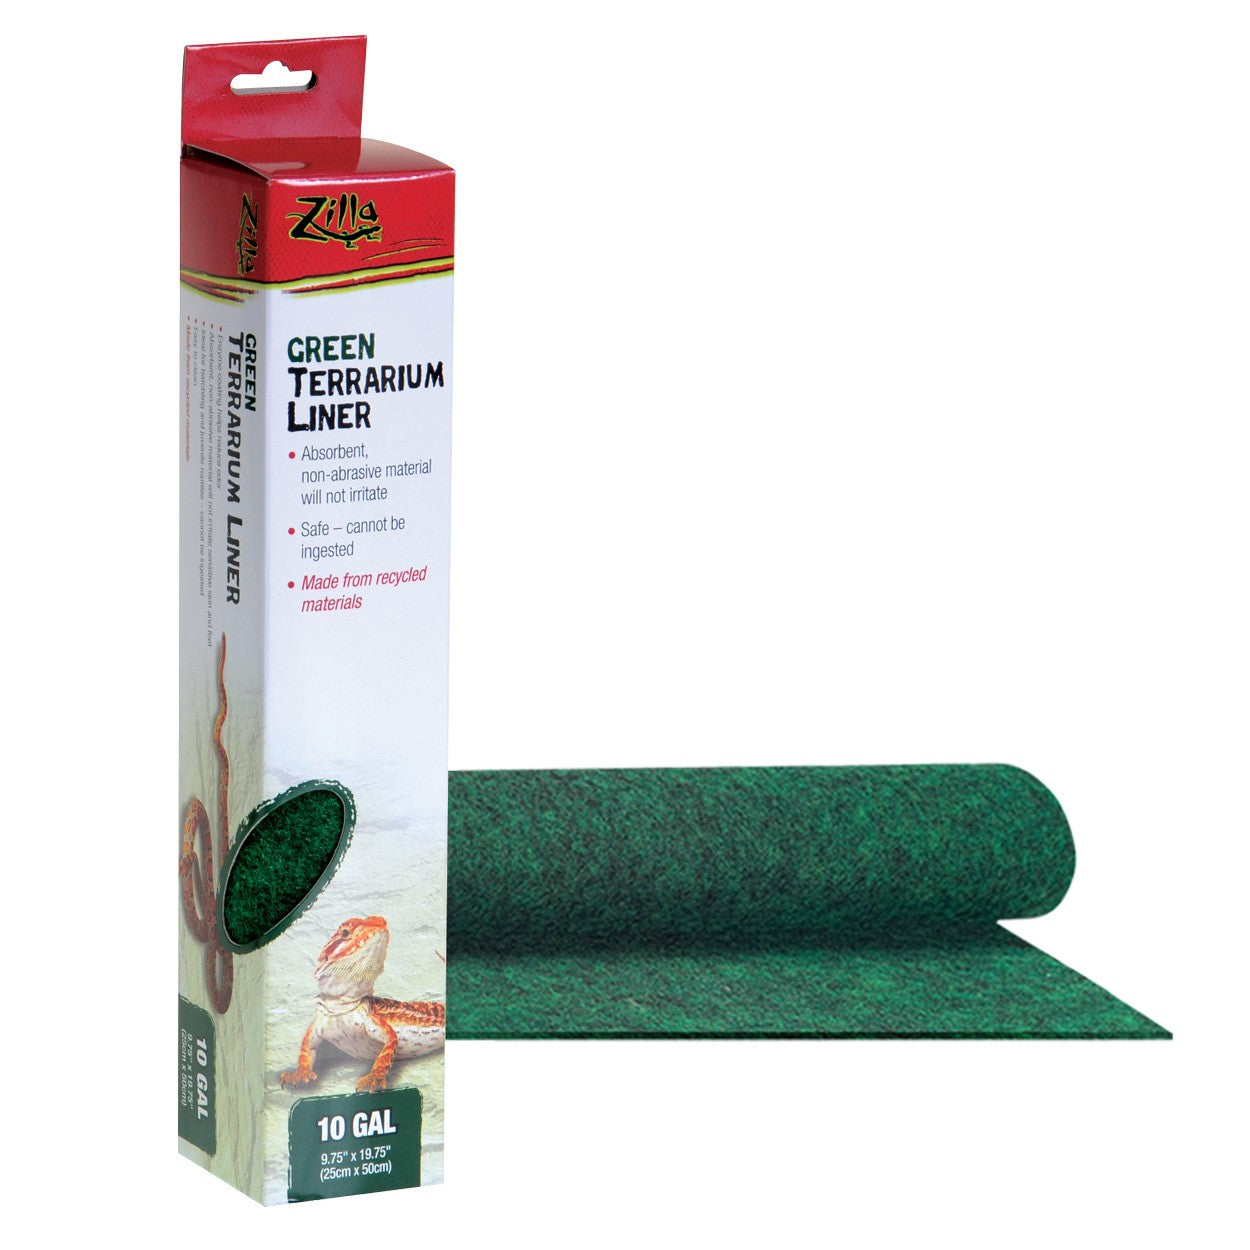 Zilla 10 Gallon Green Terrarium Liner